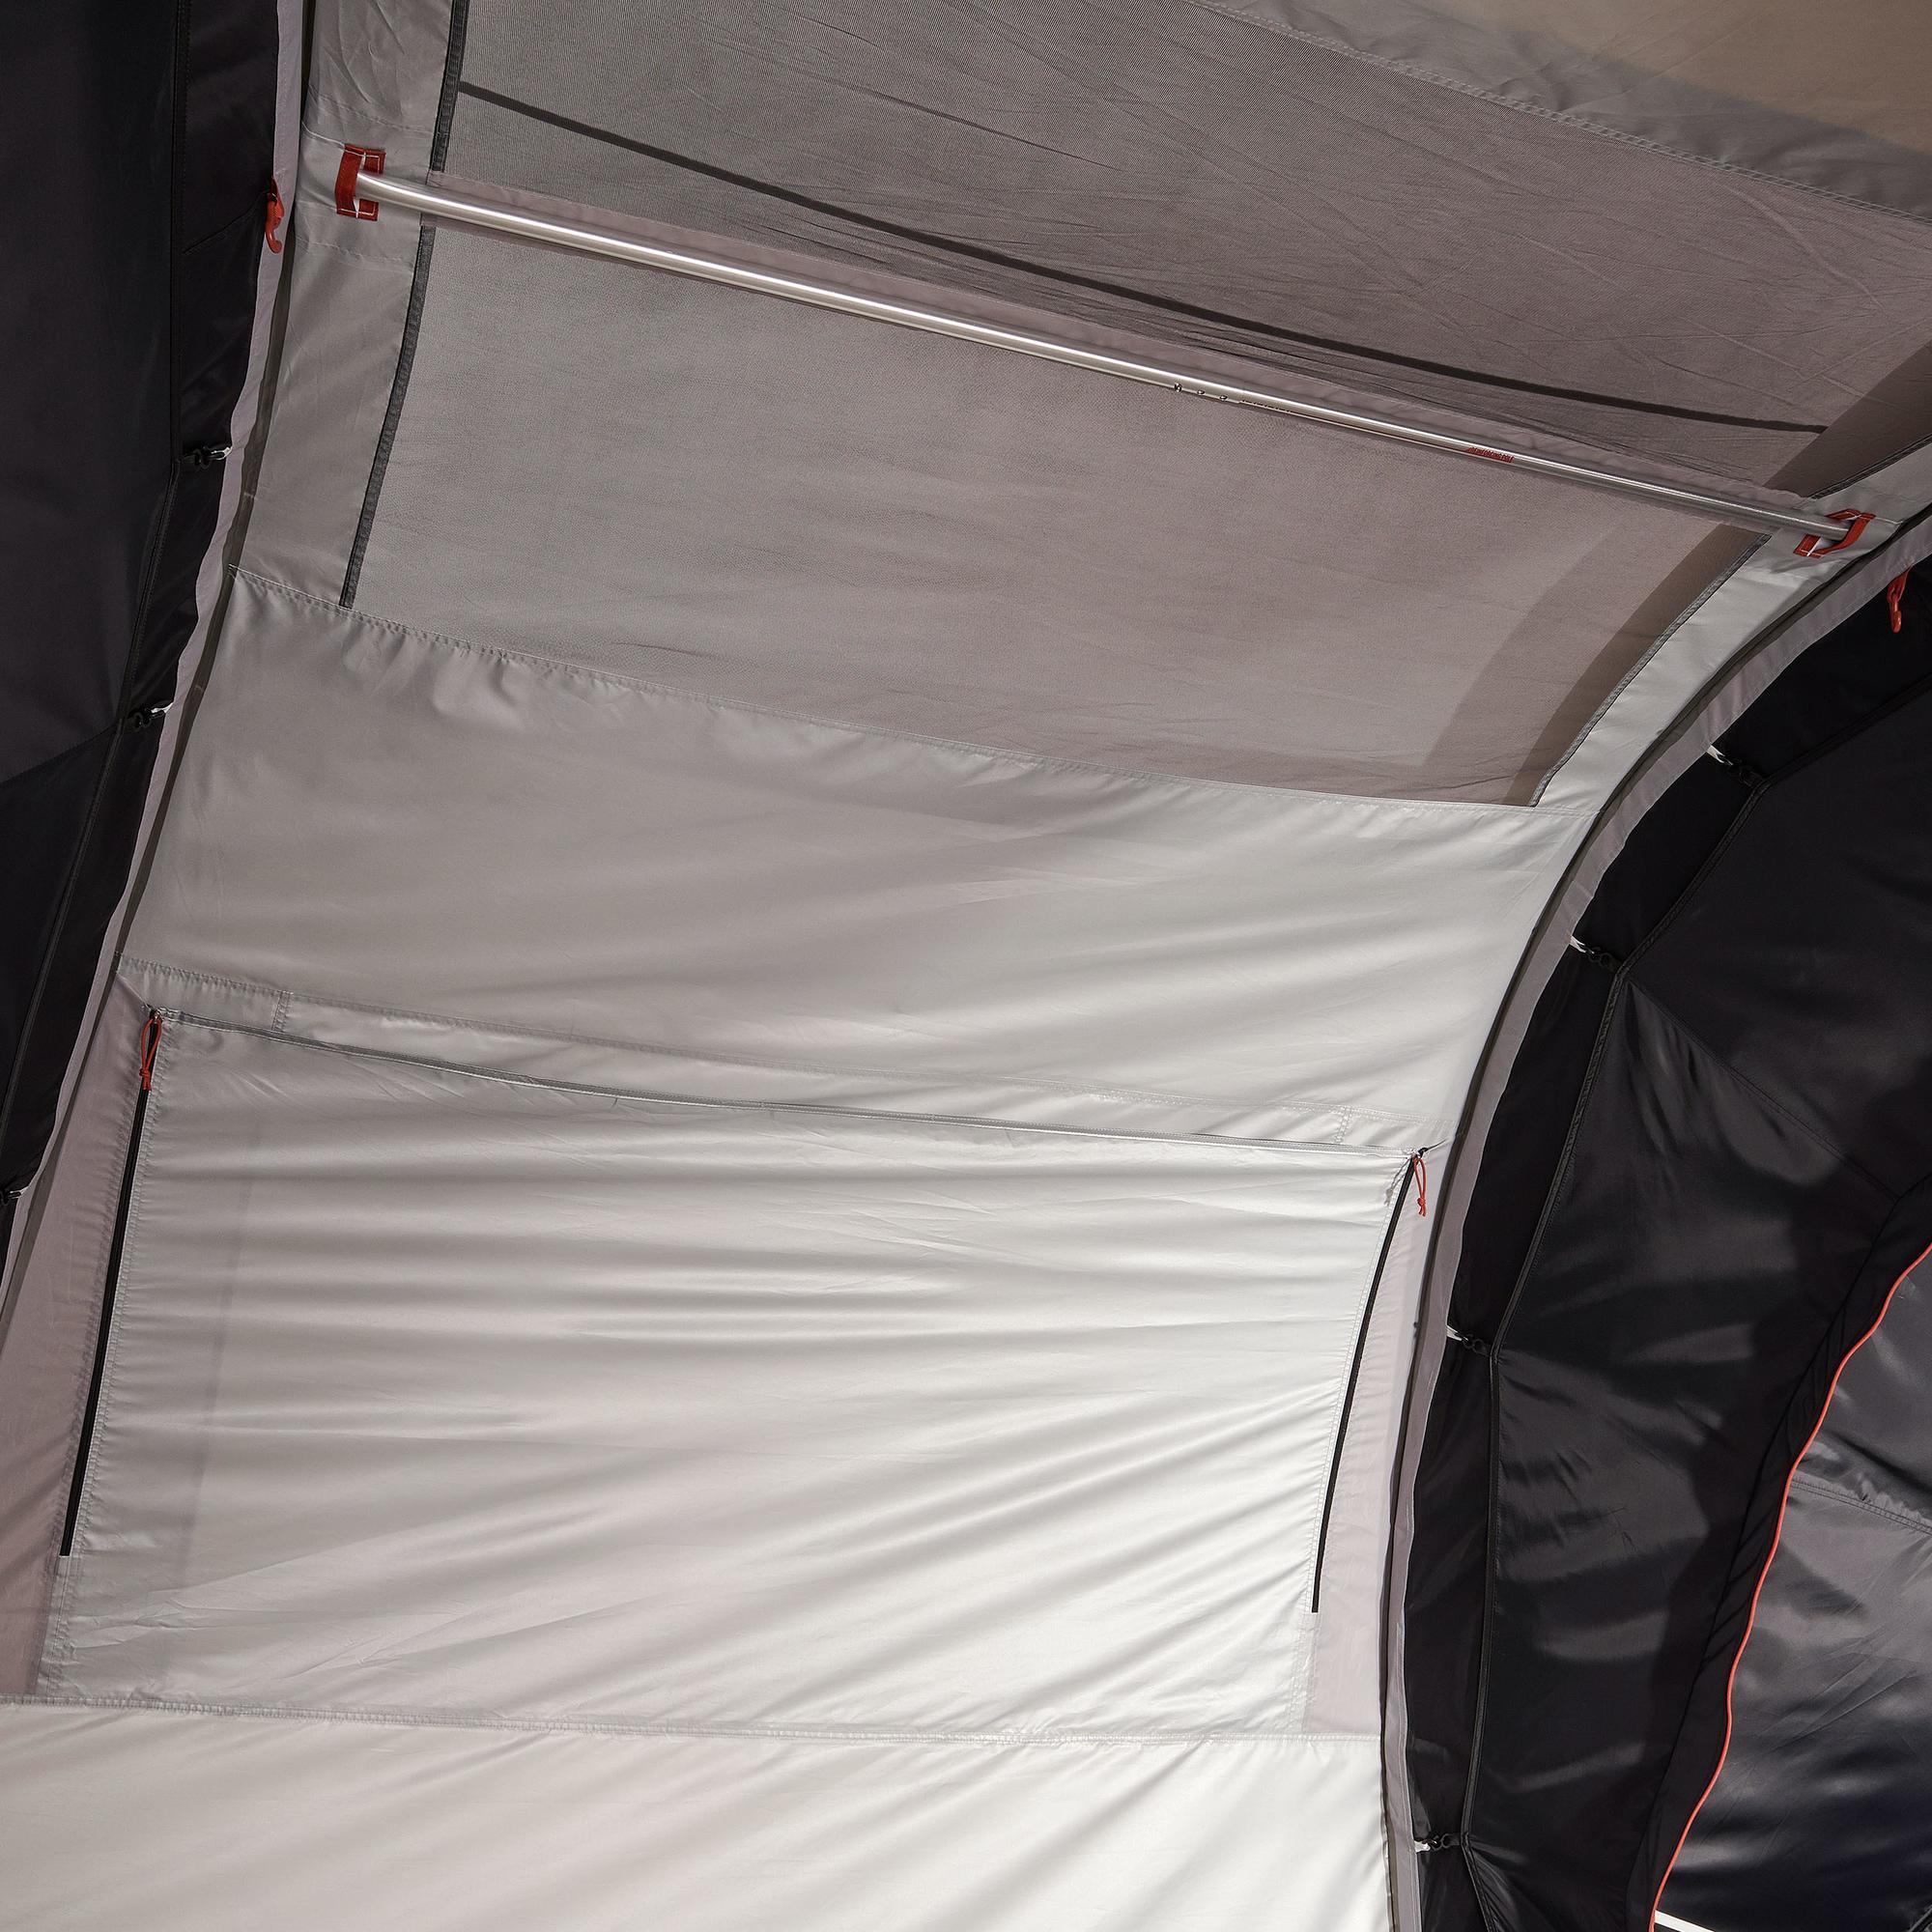 decathlon 4 man air tent